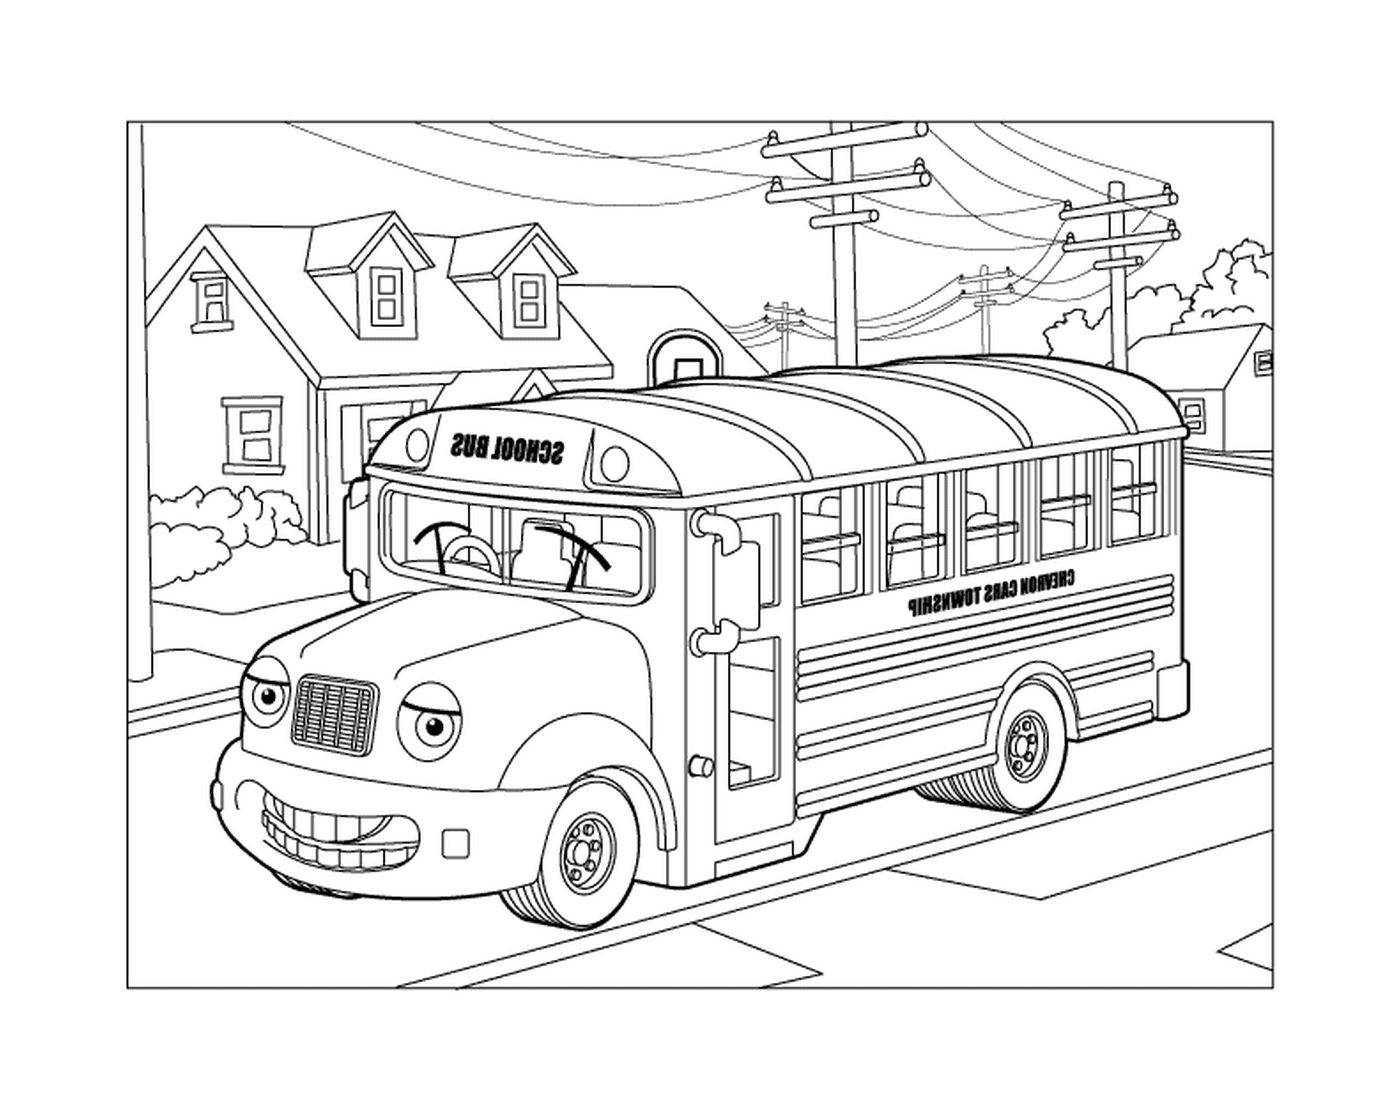  Un autobús escolar conduciendo por la calle 